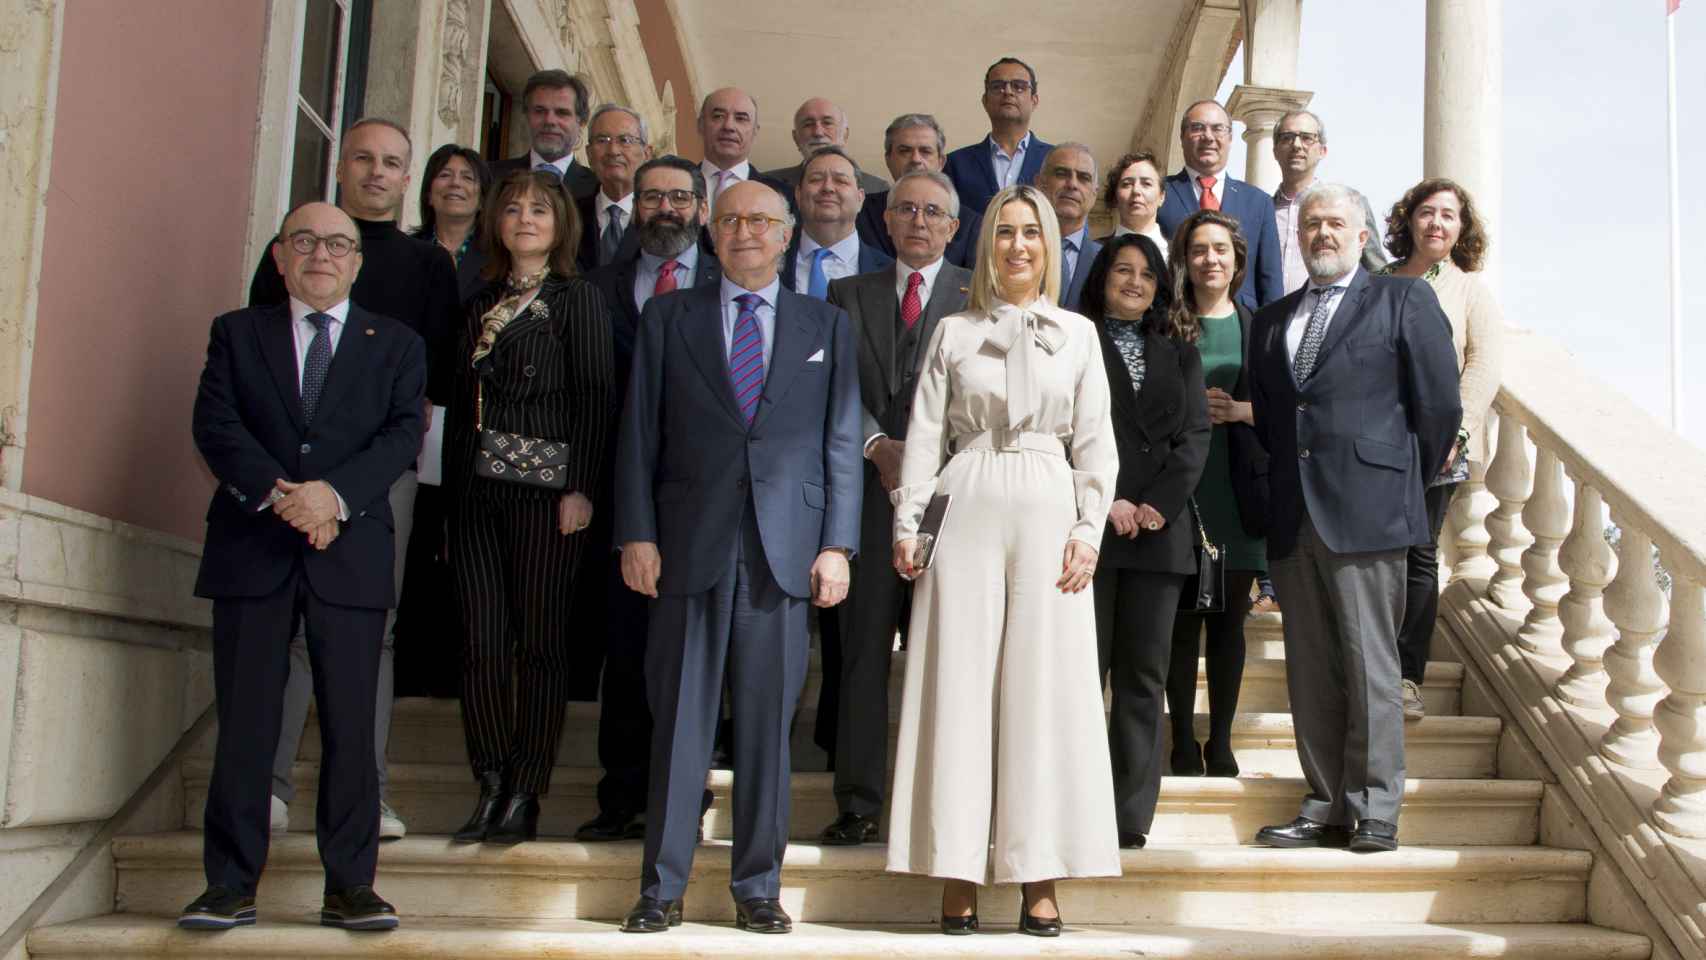 A Câmara de Comércio de Zamora assina protocolo de colaboração entre Espanha e Portugal